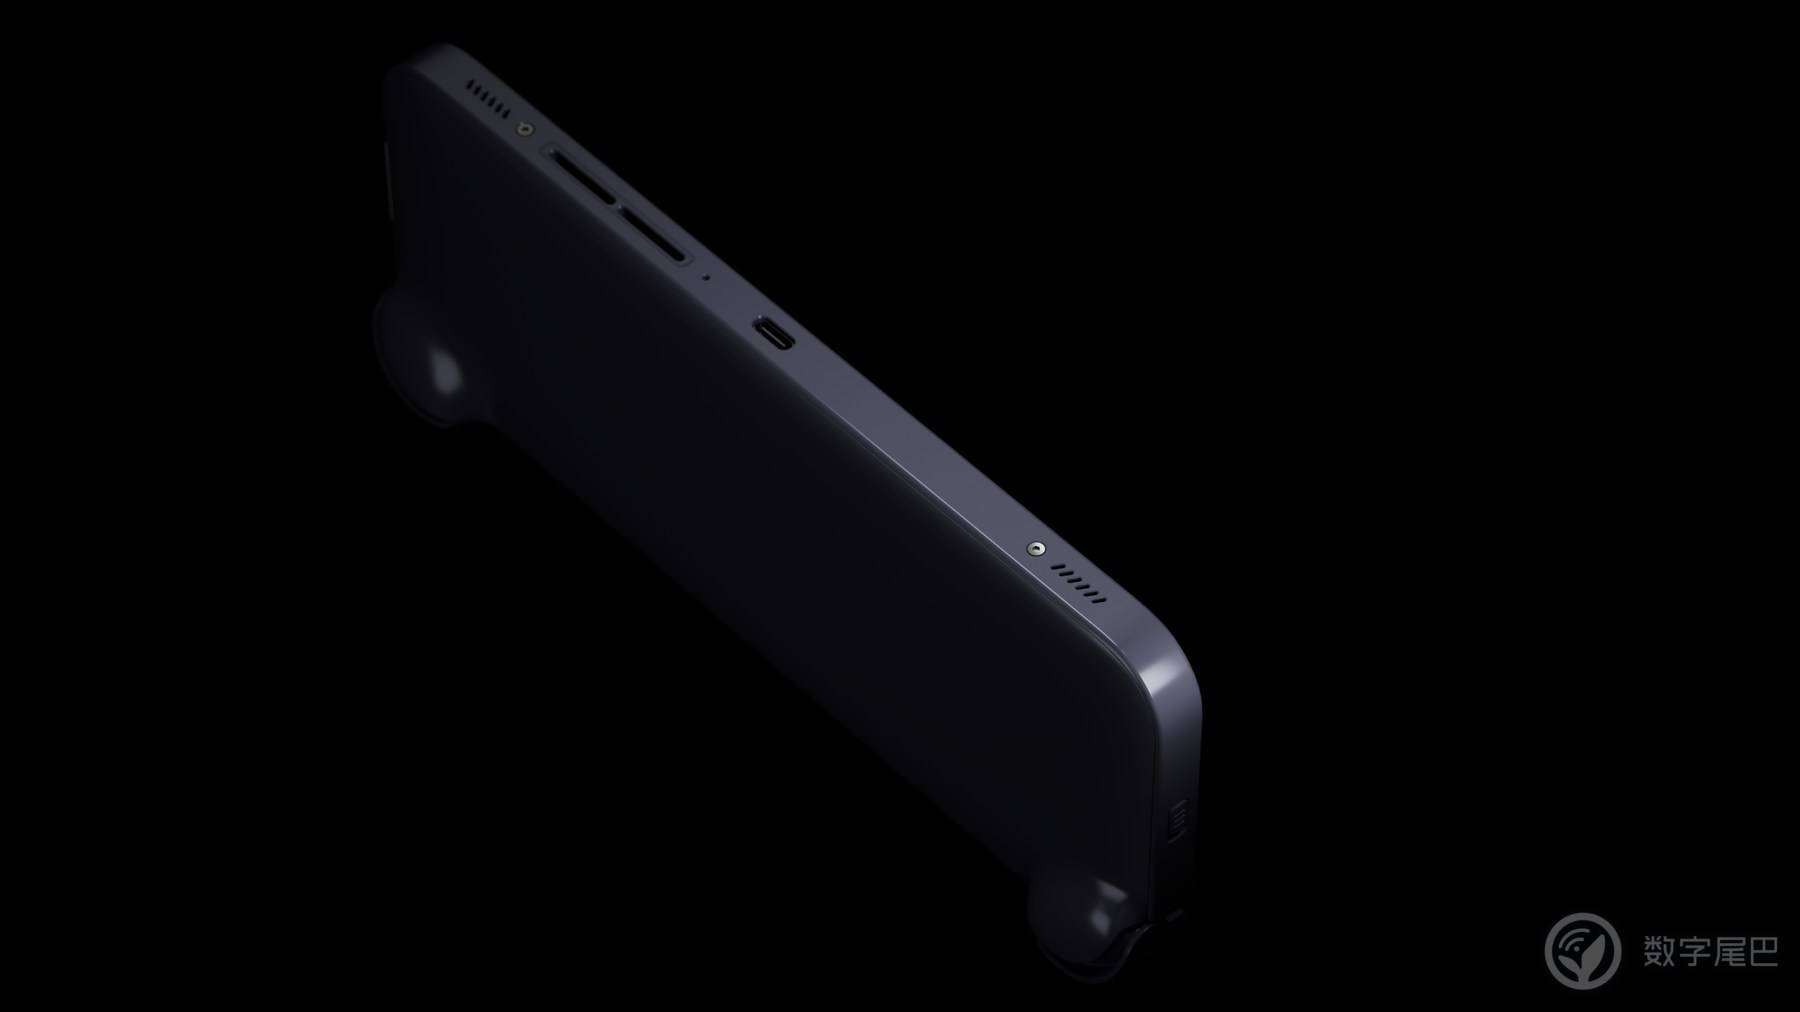 搭载第二代骁龙 G3x 游戏平台，高端旗舰安卓掌机 AYANEO Pocket S 正式发布